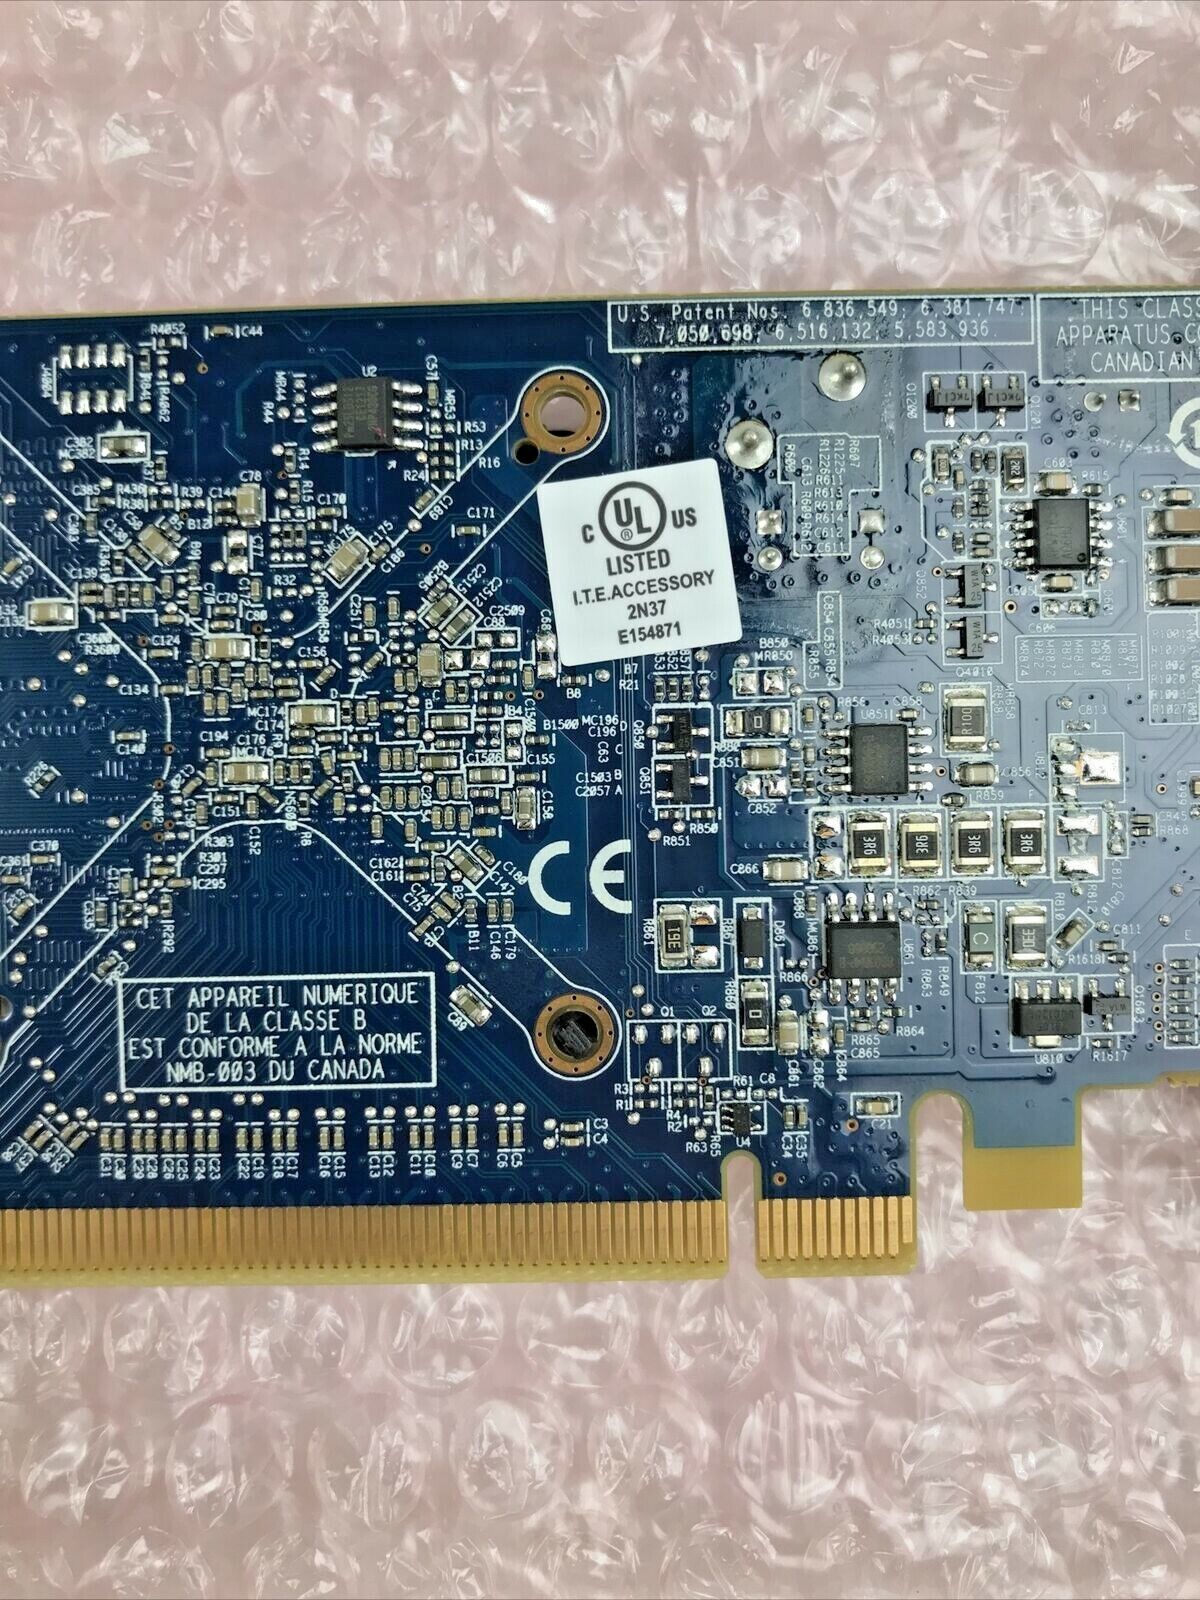 ATI Radeon Dual Monitor 512MB Video Card ATI-102-C09003 B